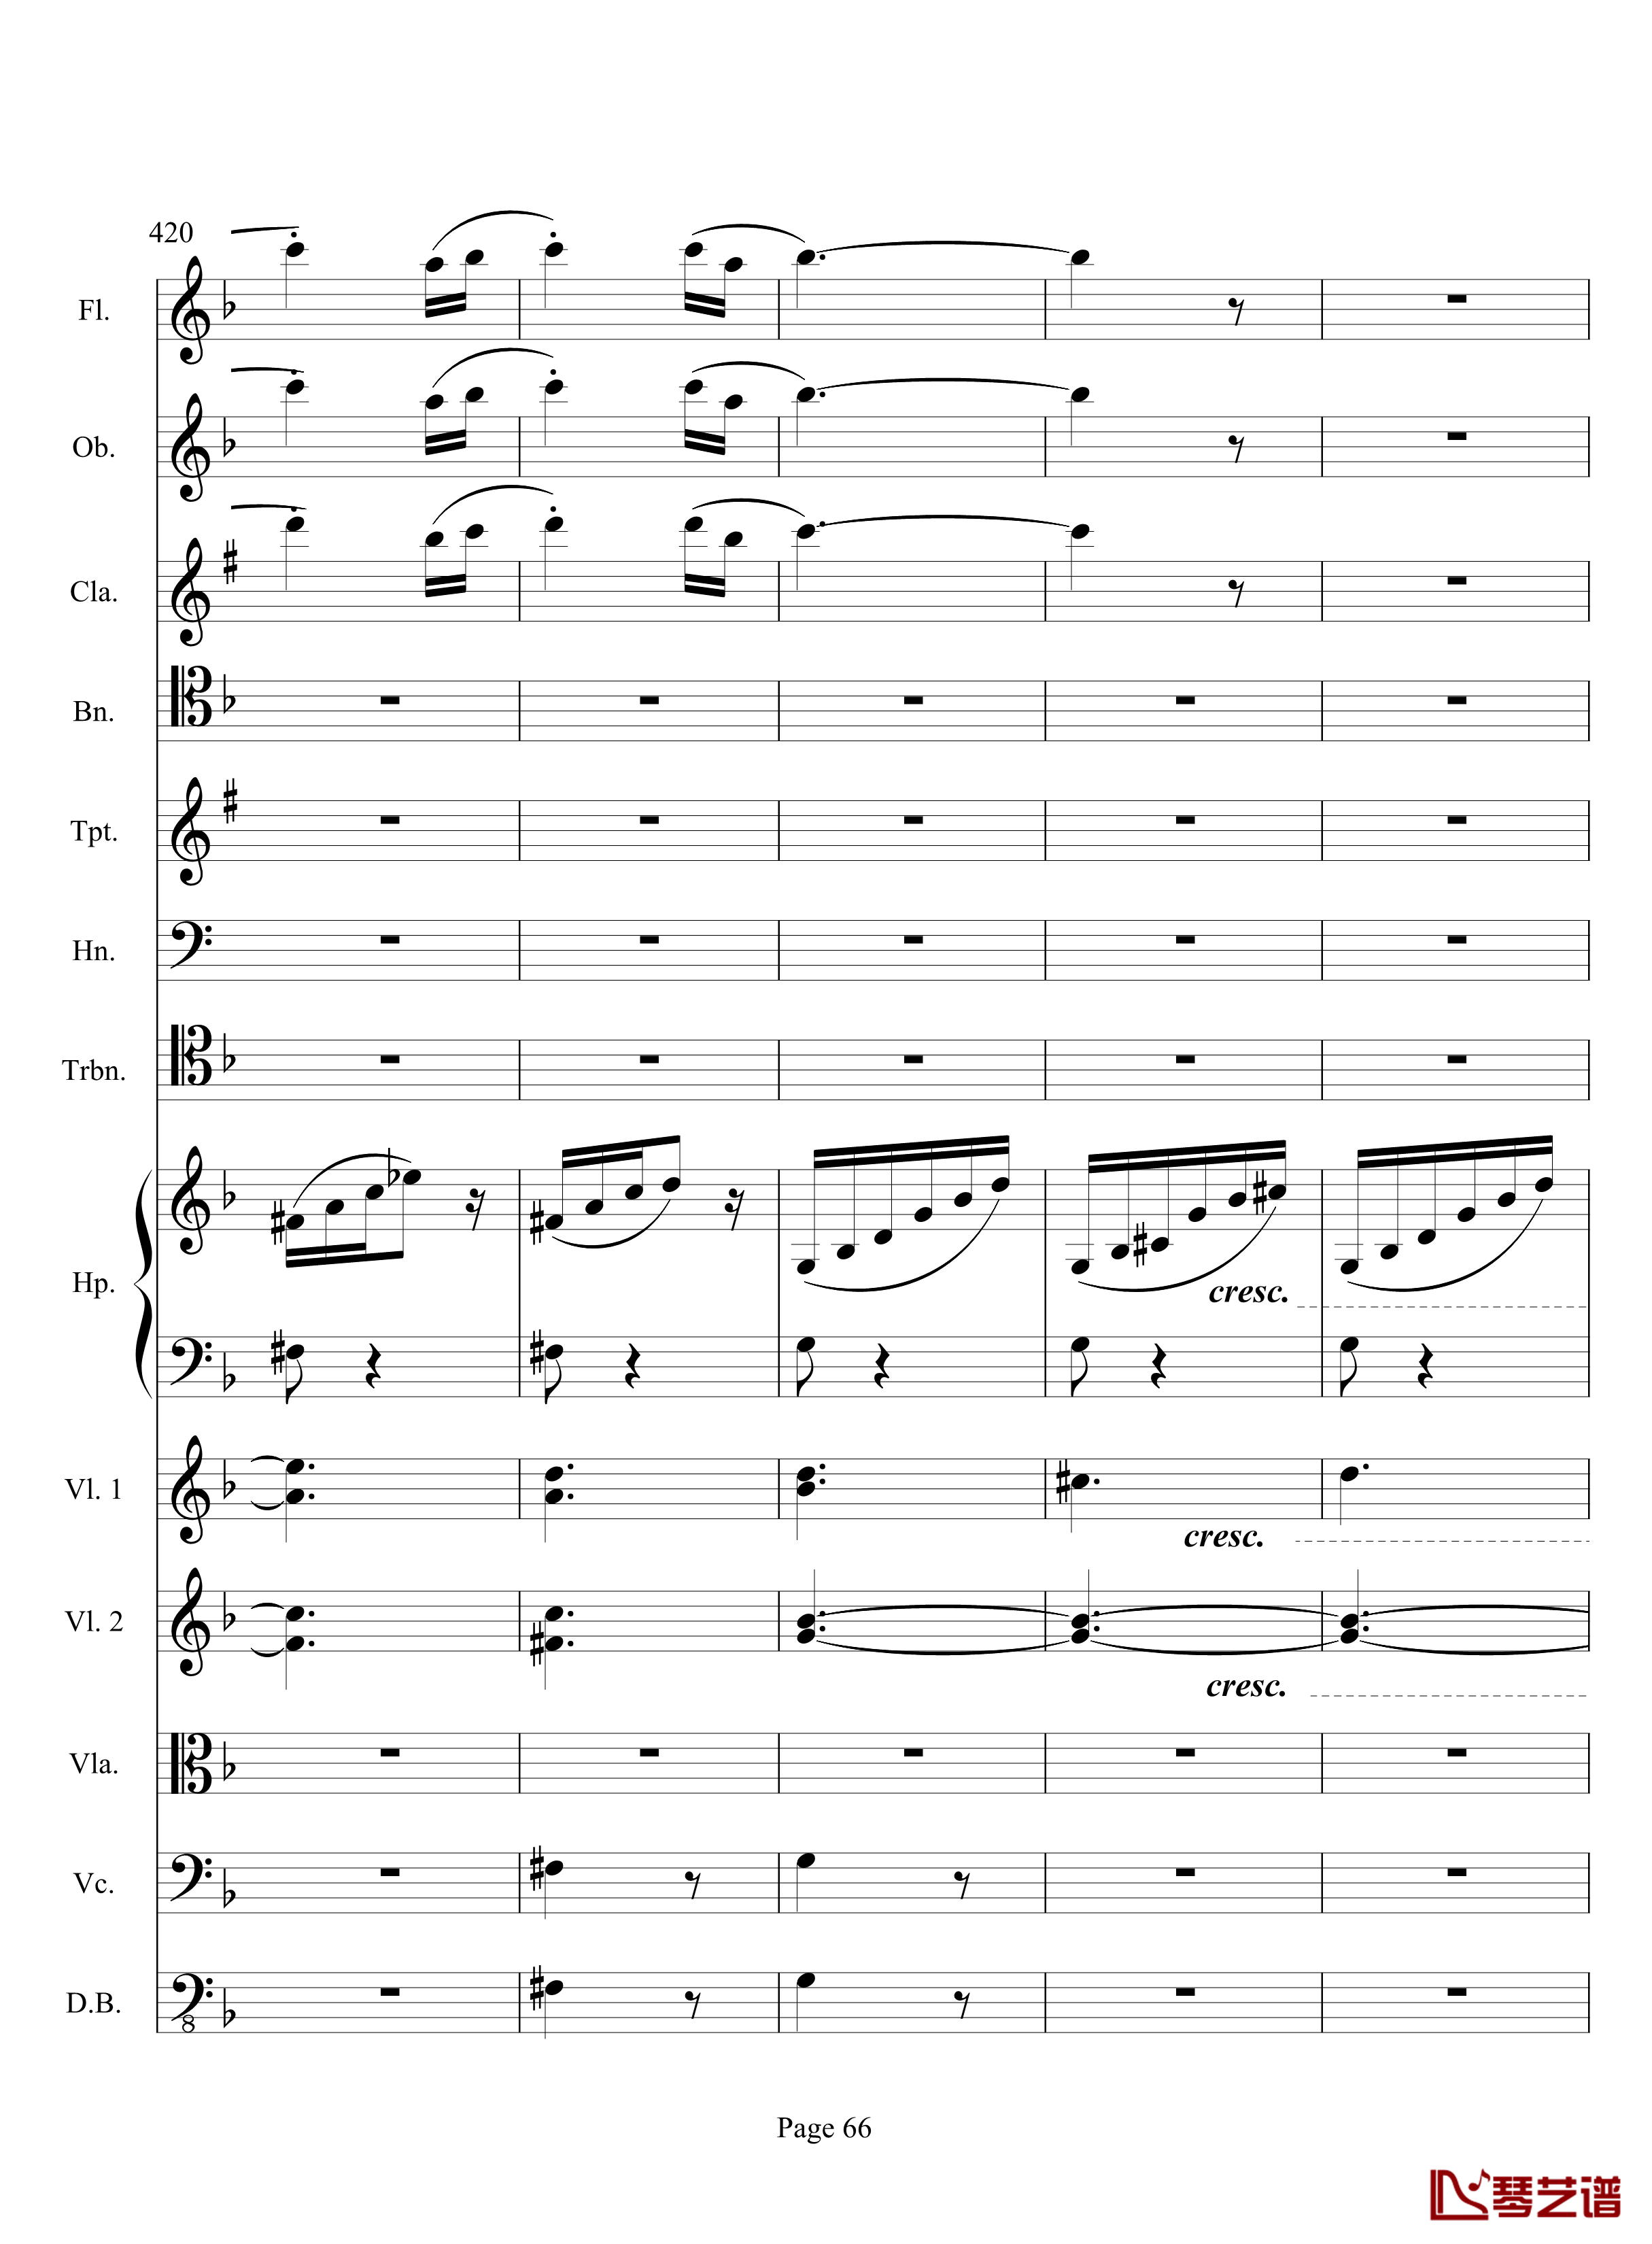 奏鸣曲之交响钢琴谱-第17首-Ⅲ-贝多芬-beethoven66